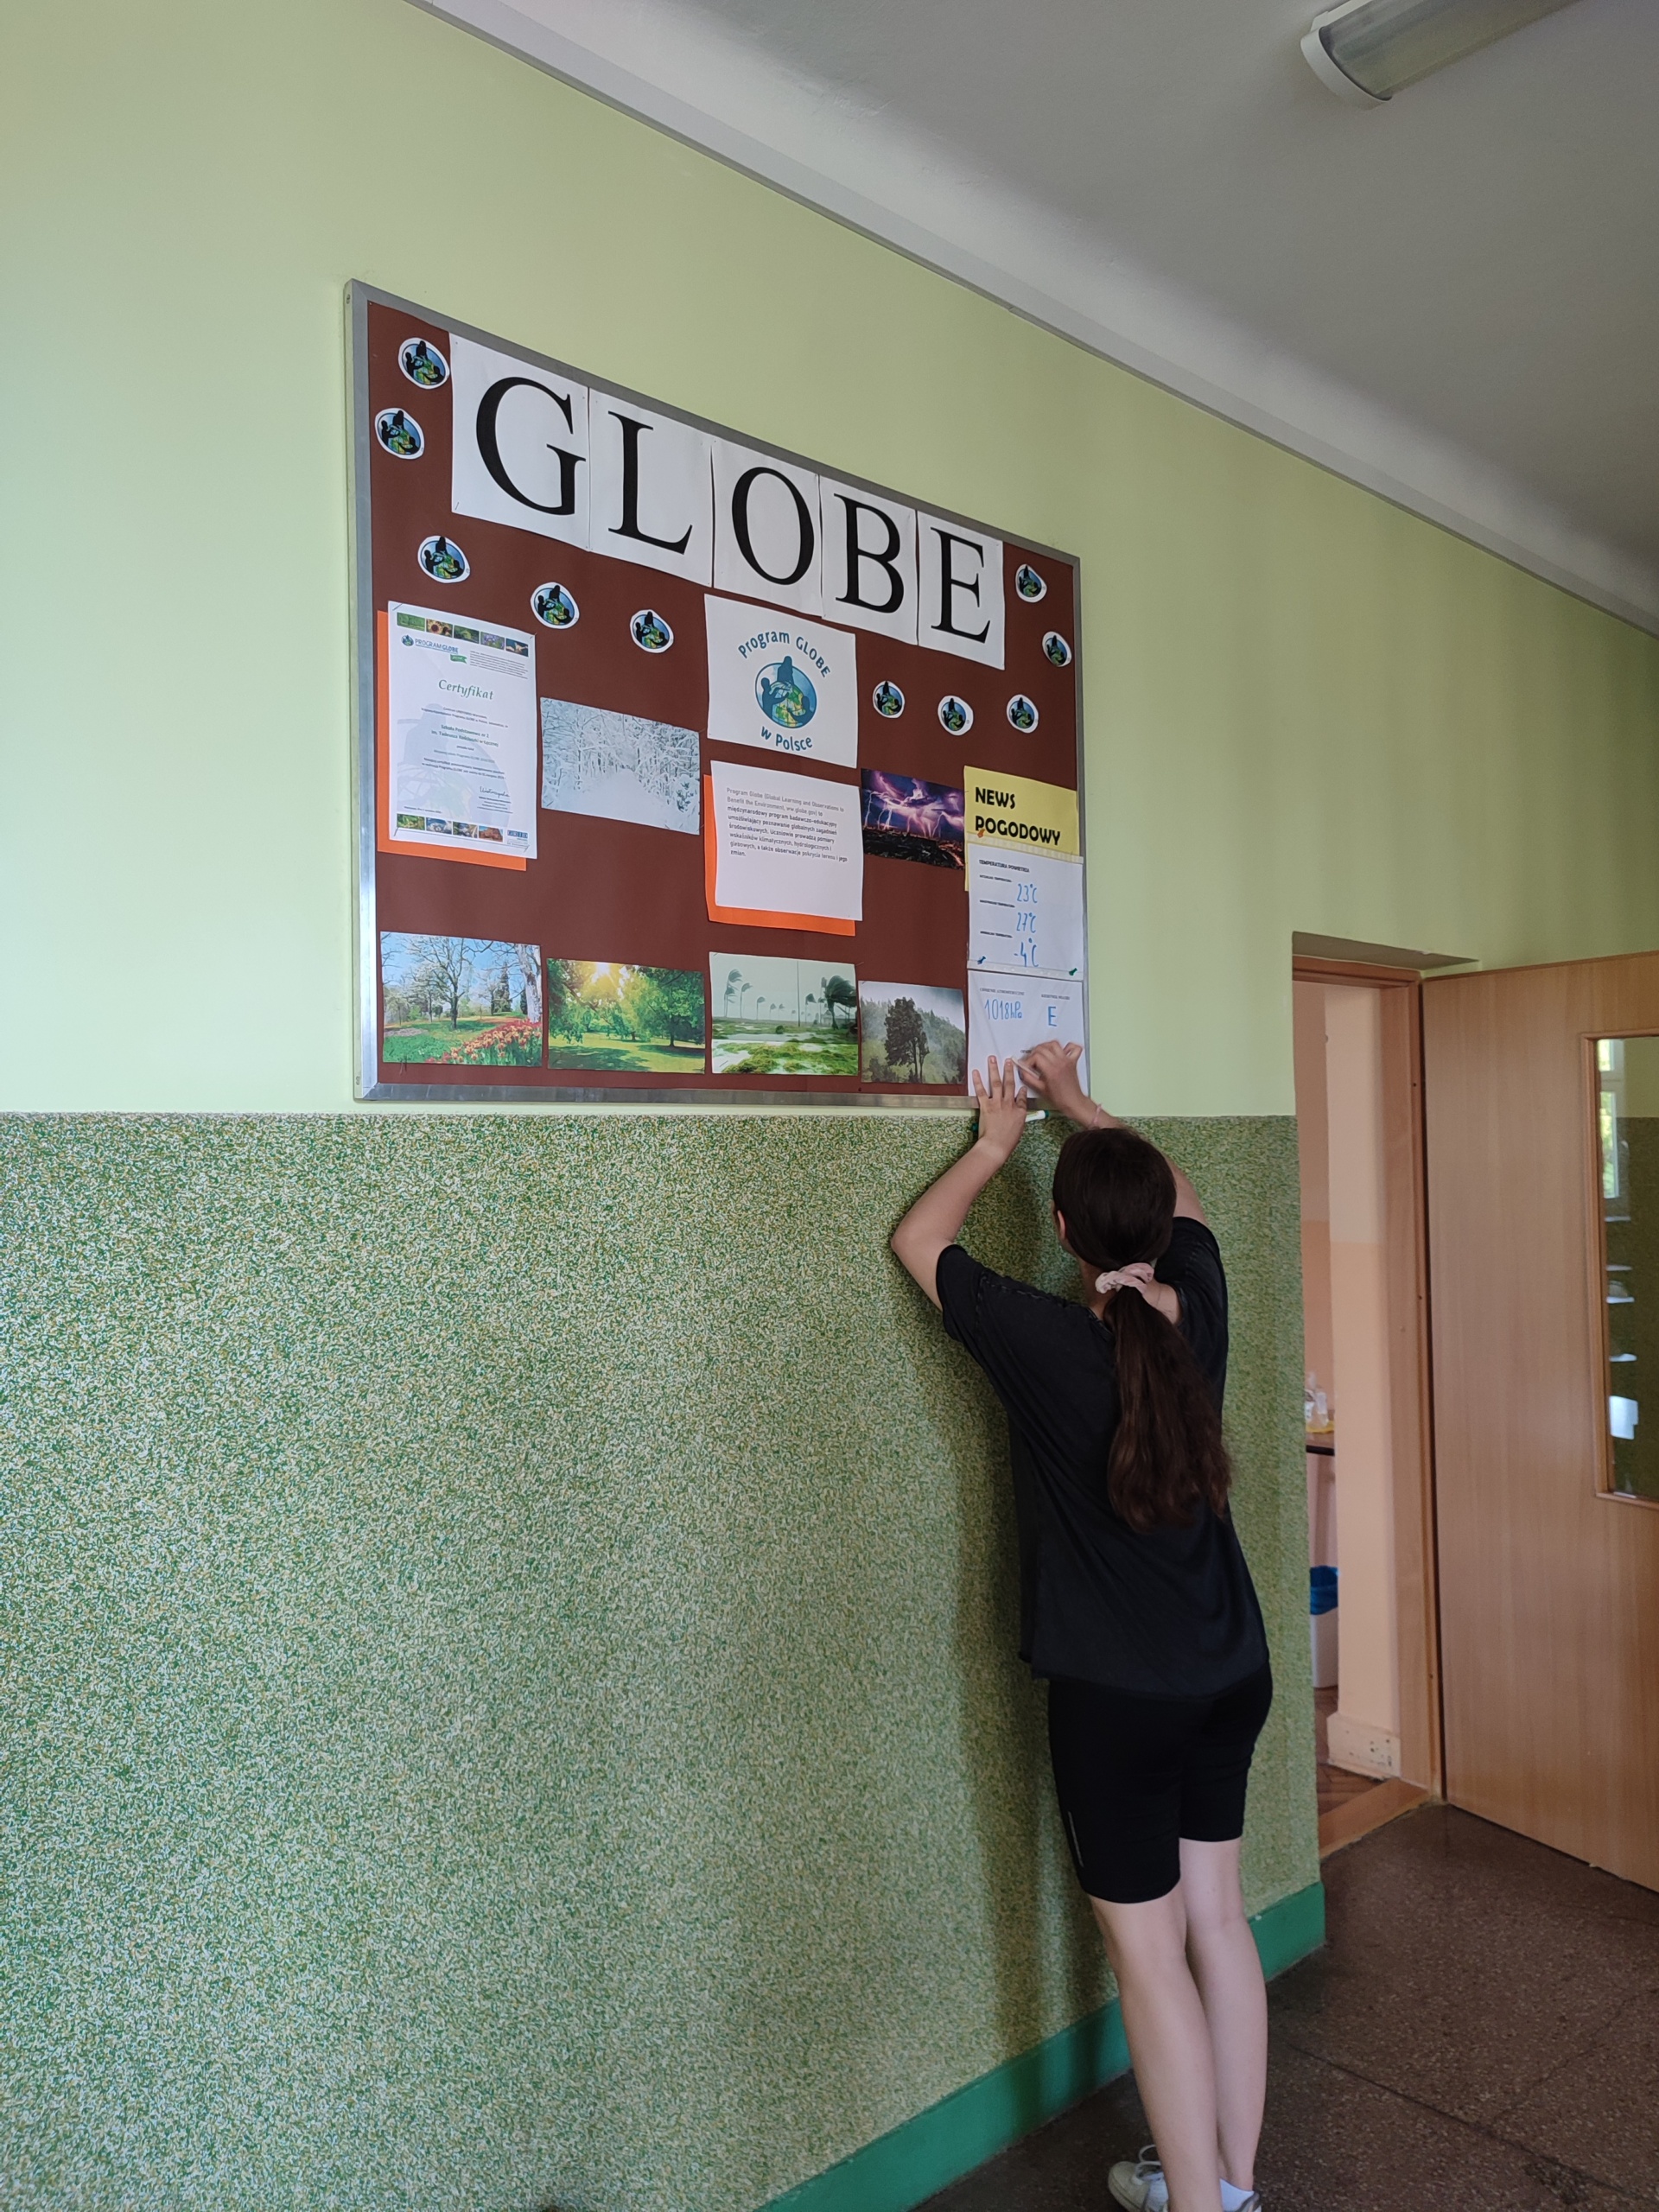 Wnętrze szkoły, korytarz, na zielonej ścianie wisi tablica z napisem GLOBE, na niej róznokolorowe plansze. Uczennica ubrana na czarno przyczepia na tablicy nową planszę. W oddali widać fragment brązowych drzwi. 